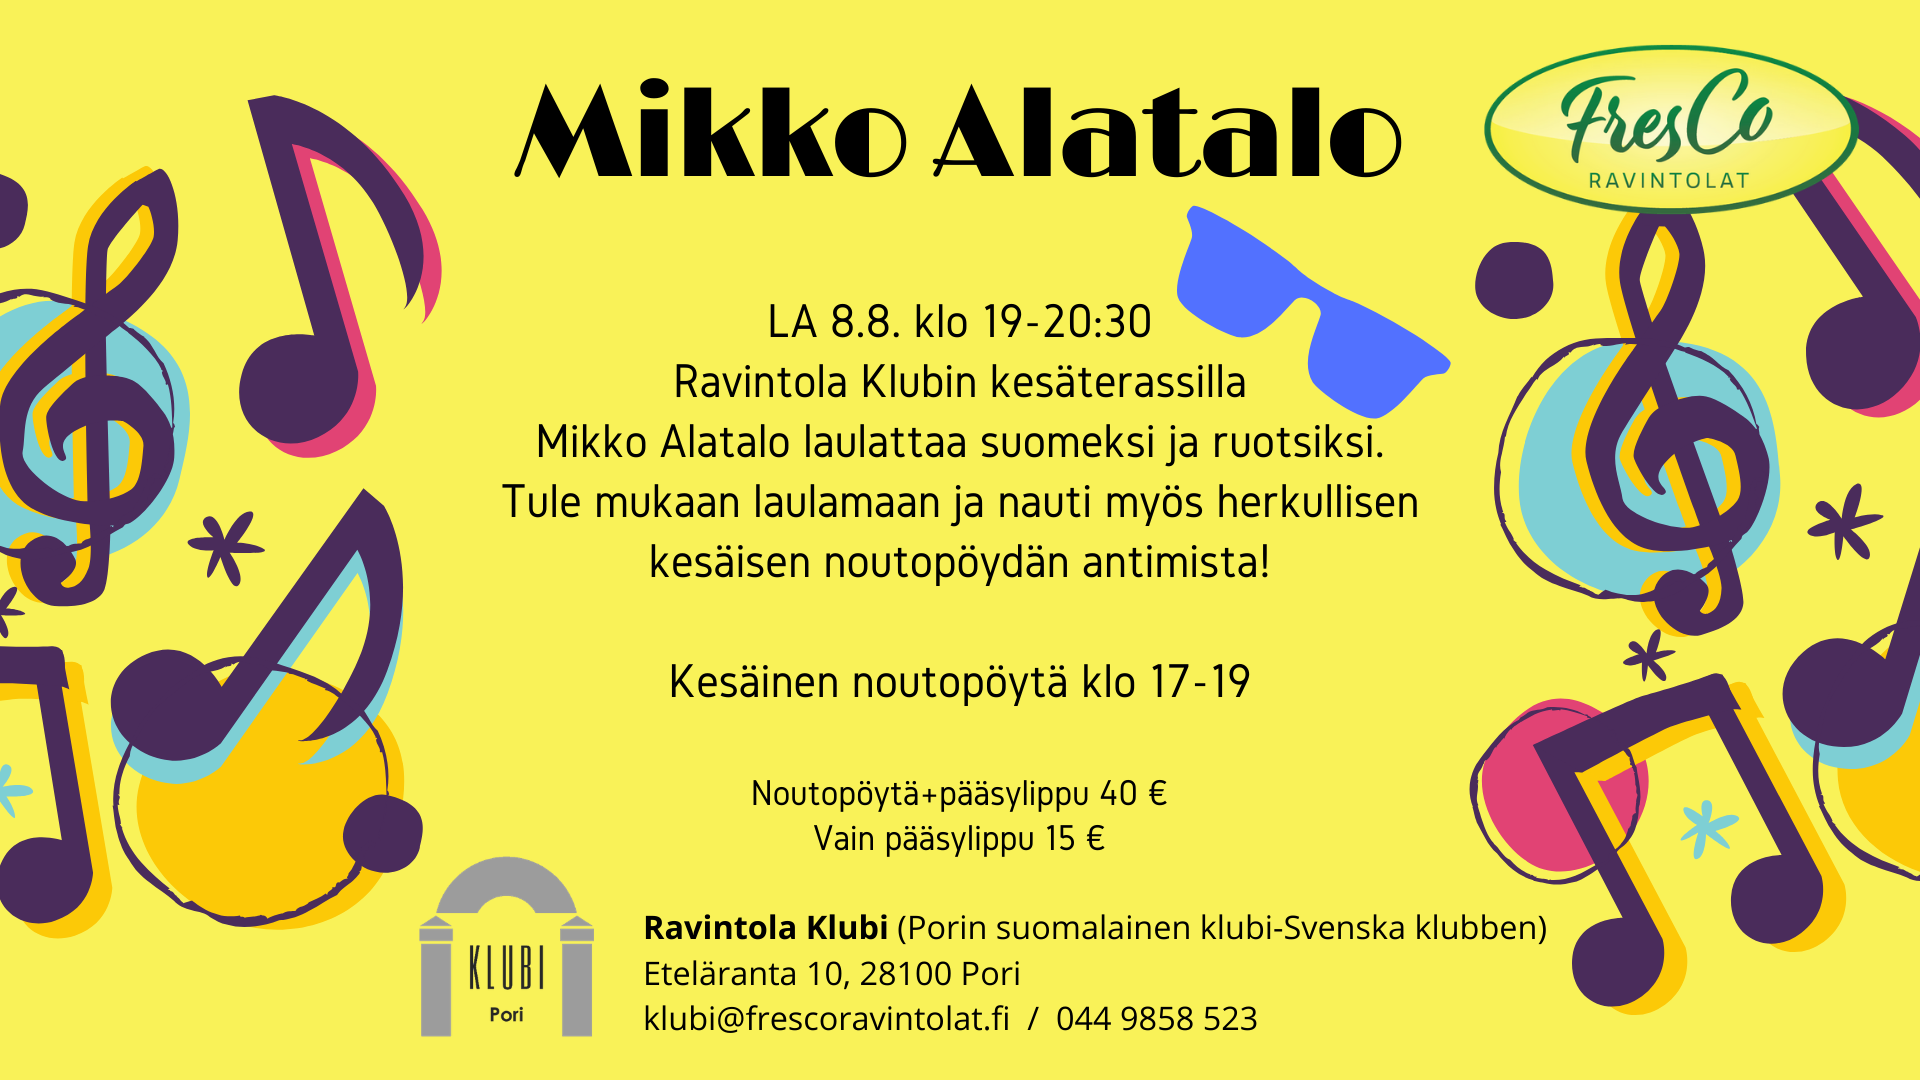 Mikko Alatalo laulattaa ravintola Klubin terassilla LA 8.8.